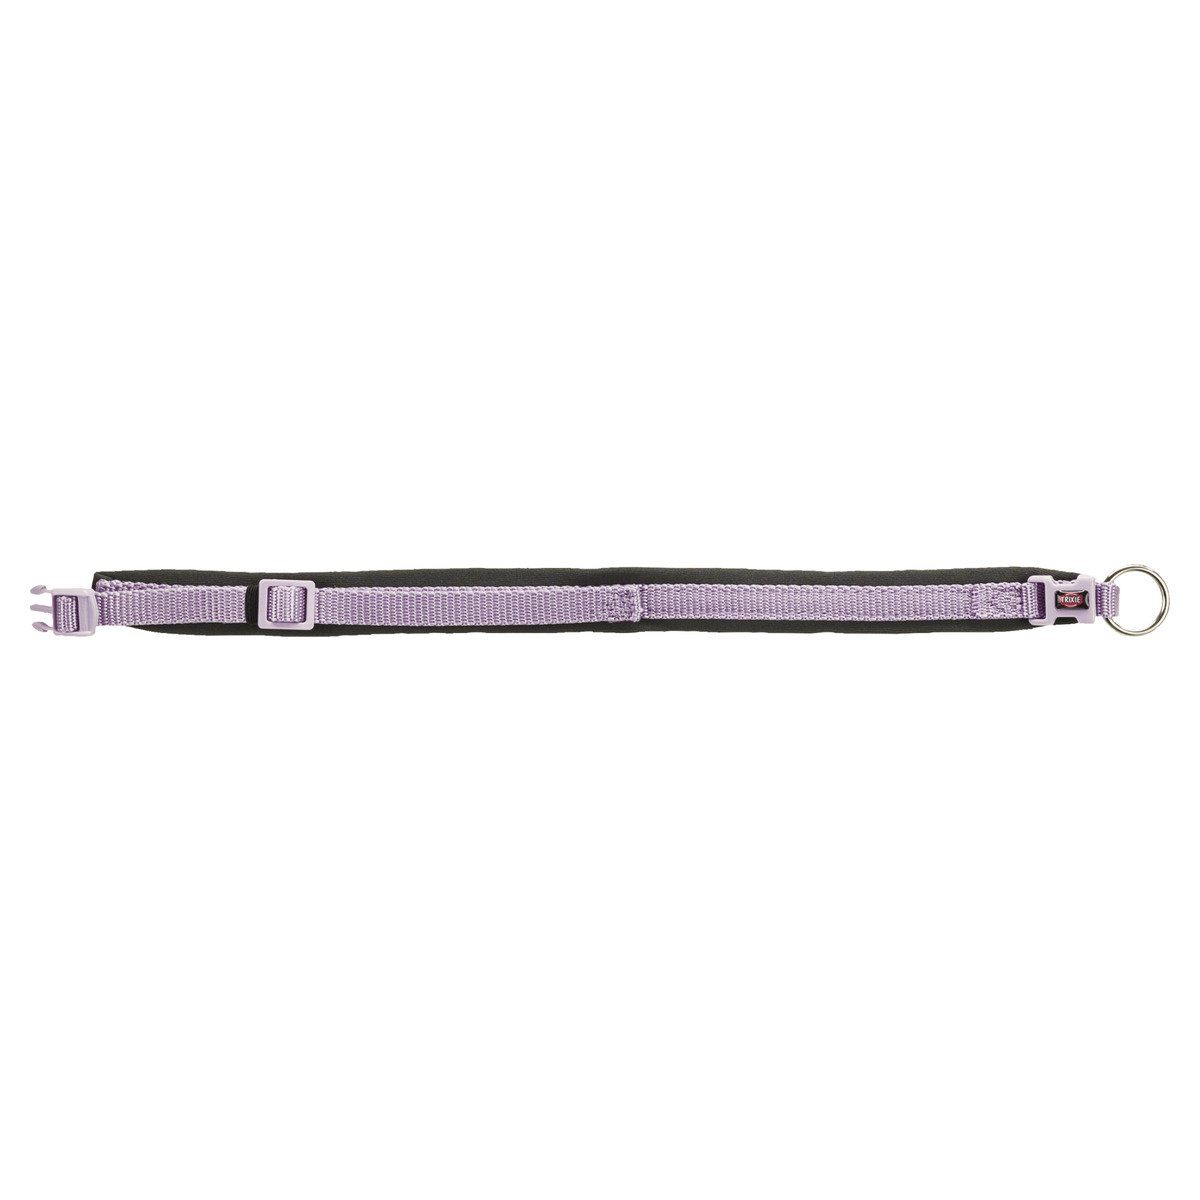 TRIXIE Hunde-Halsband Premium Halsband mit Neopren-Polsterung flieder/grafit, extra breit